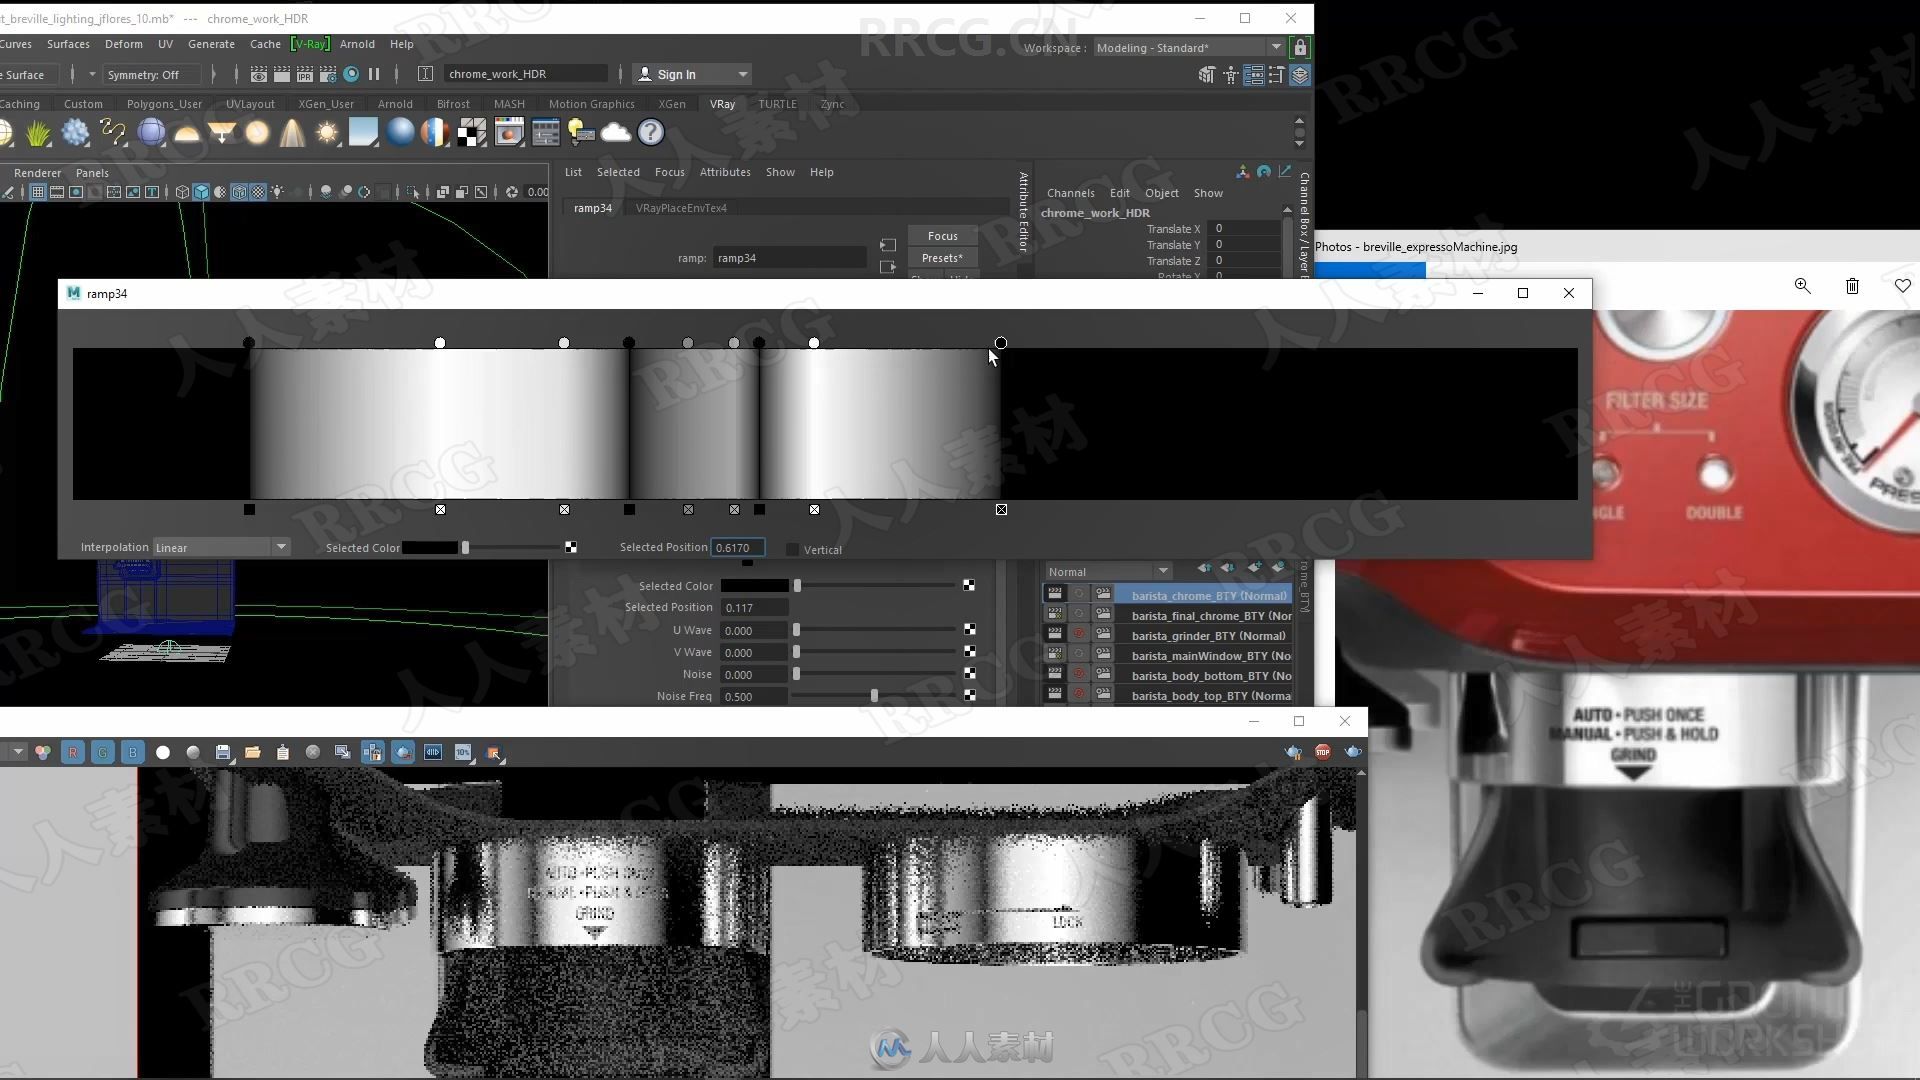 Maya印刷机器产品效果图视频教程